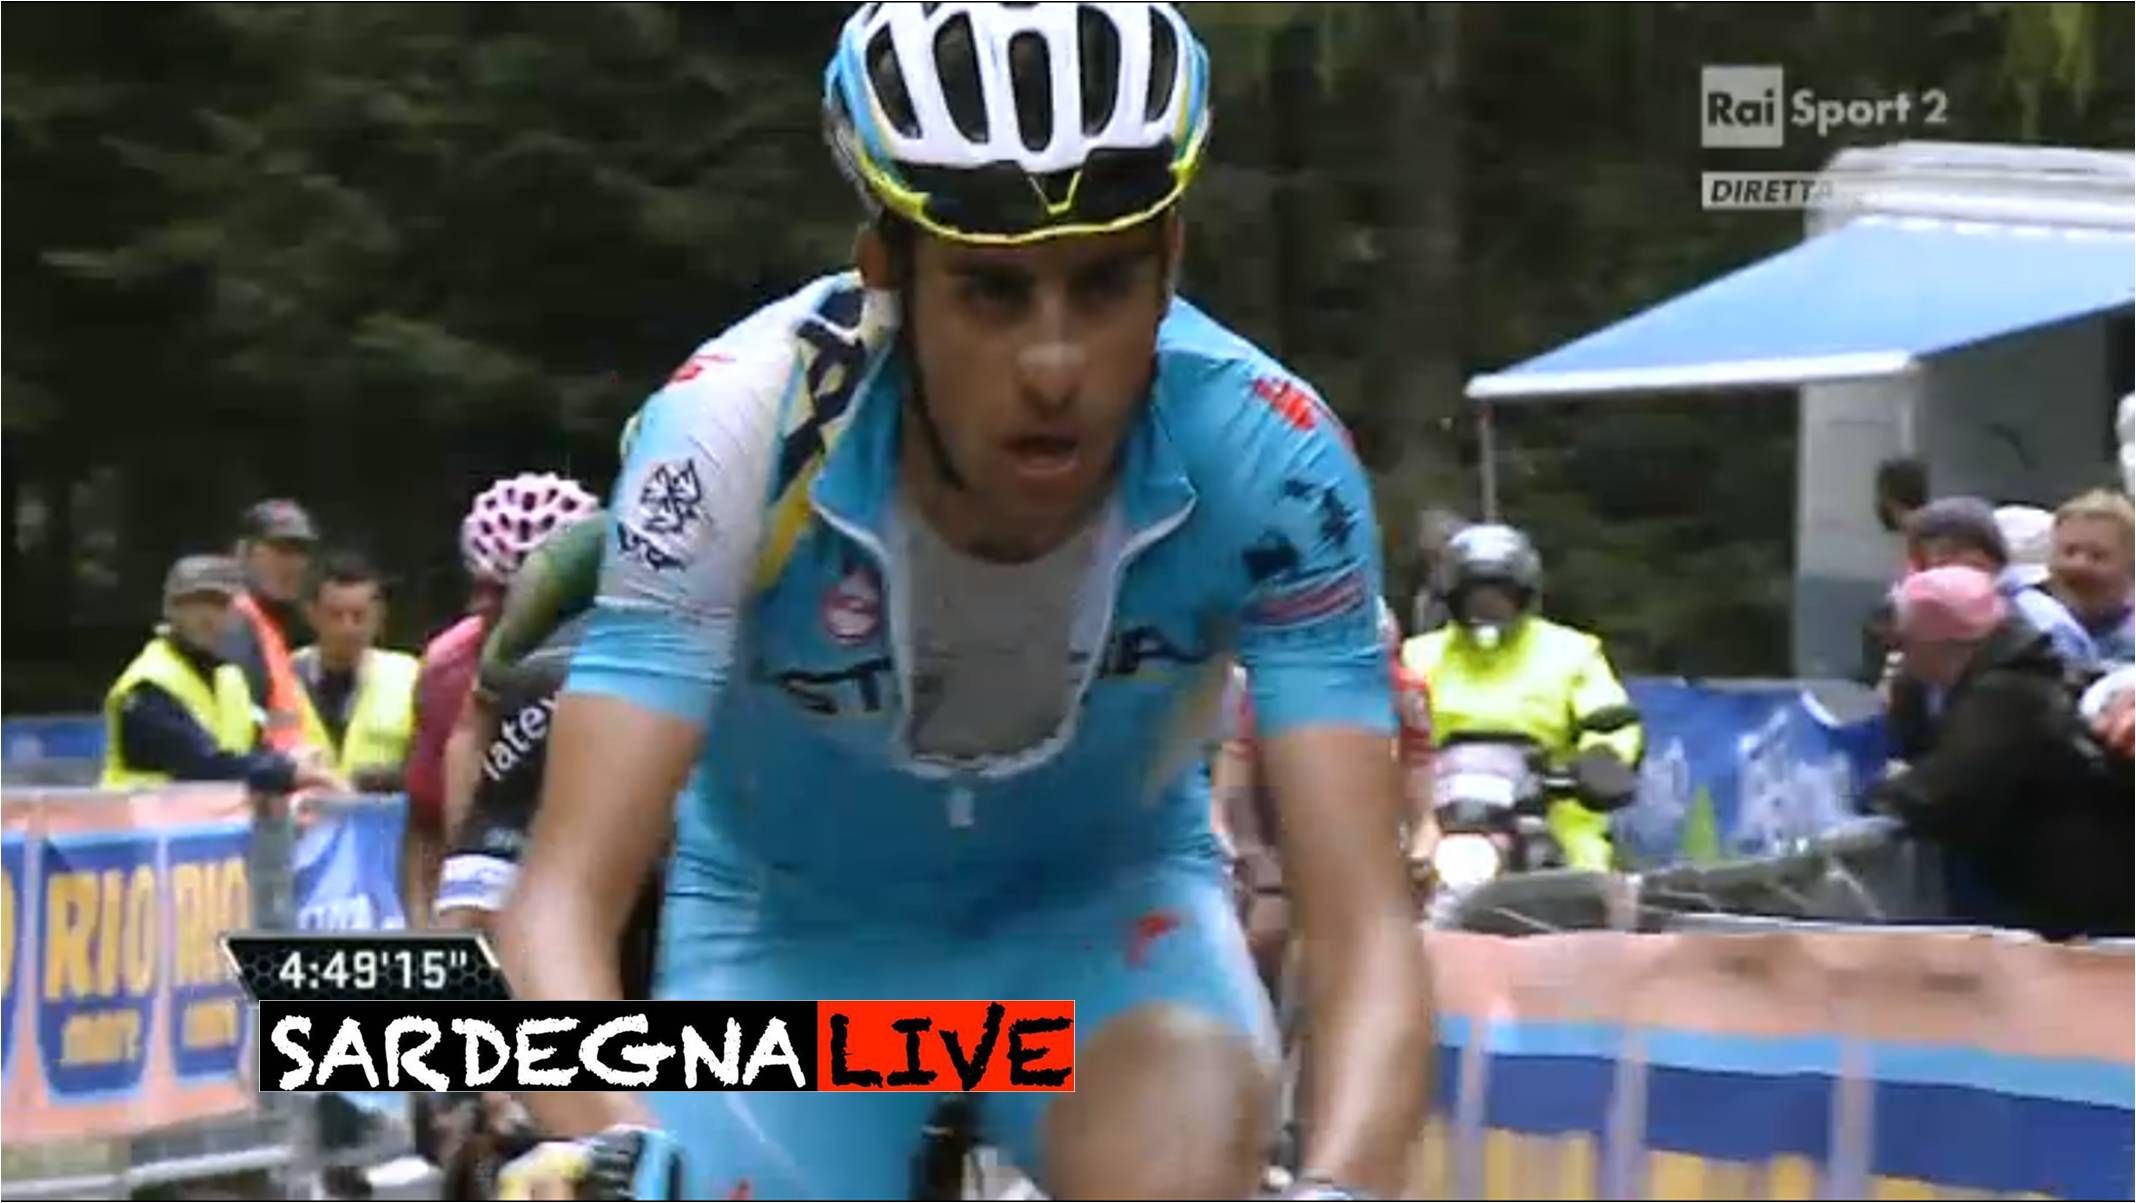 Giro d'Italia. Aru a un passo dal podio, tiene duro in Valsugana e si riprende il 4° posto